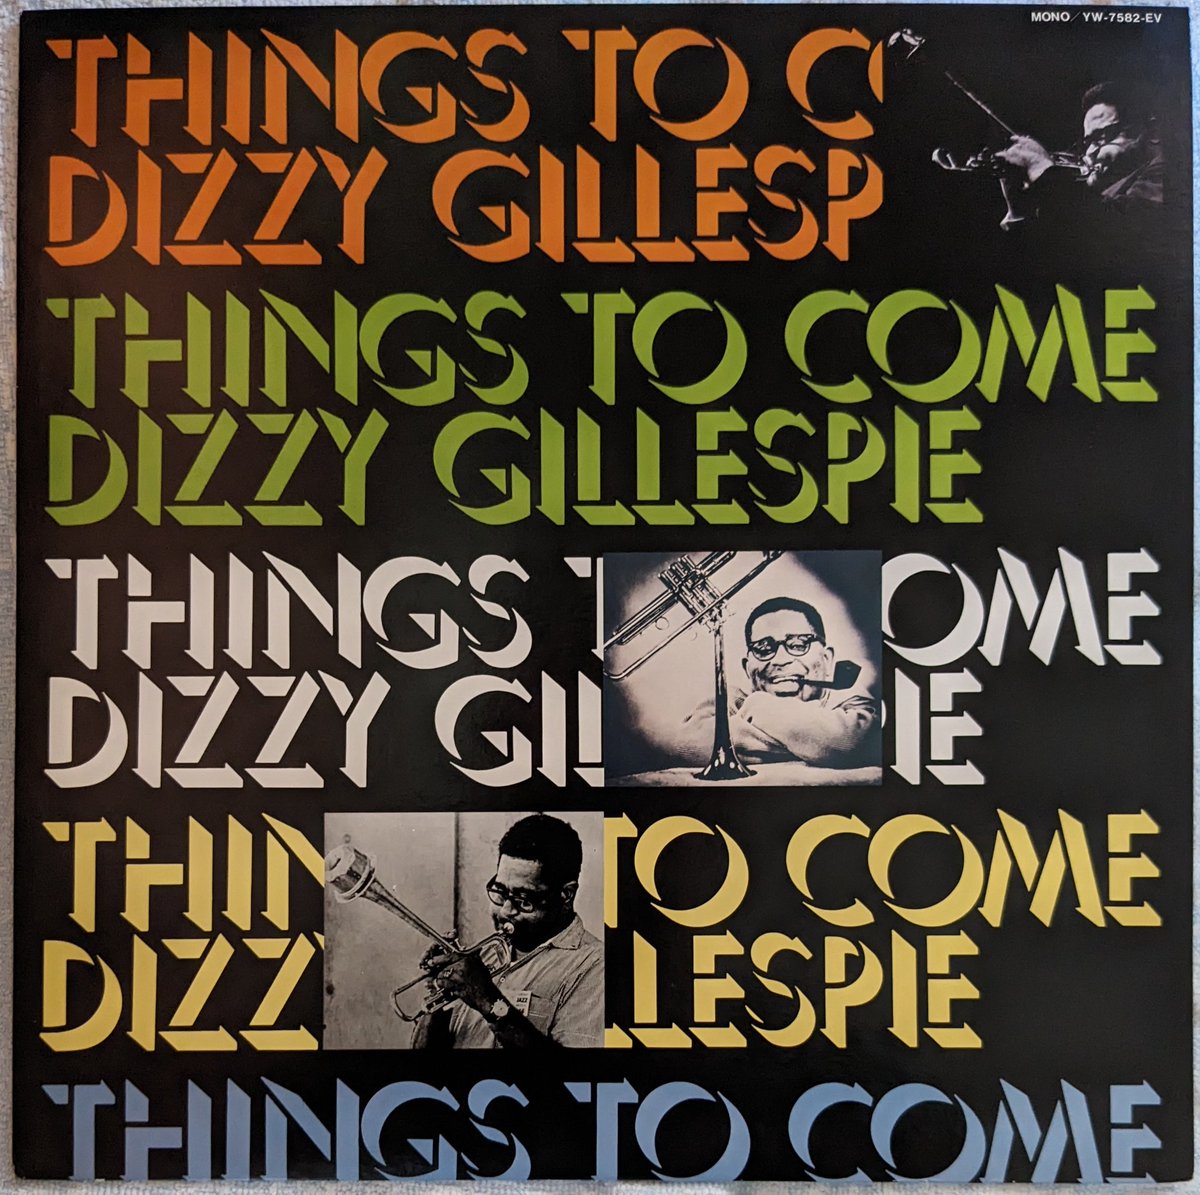 ビバップ確立期の貴重な記録であるガレスピーの'45~'46年Guild, Musicraftセッションを収めたLP📀C·パーカーとの7曲を含むコンボ12曲と自身のビッグバンド8曲✨ガレスピーはパーカーと共にモダンジャズを確立したがトランペッターとしても圧倒的な名手だった事が解る
#DizzyGillespie
#ThingsToCome